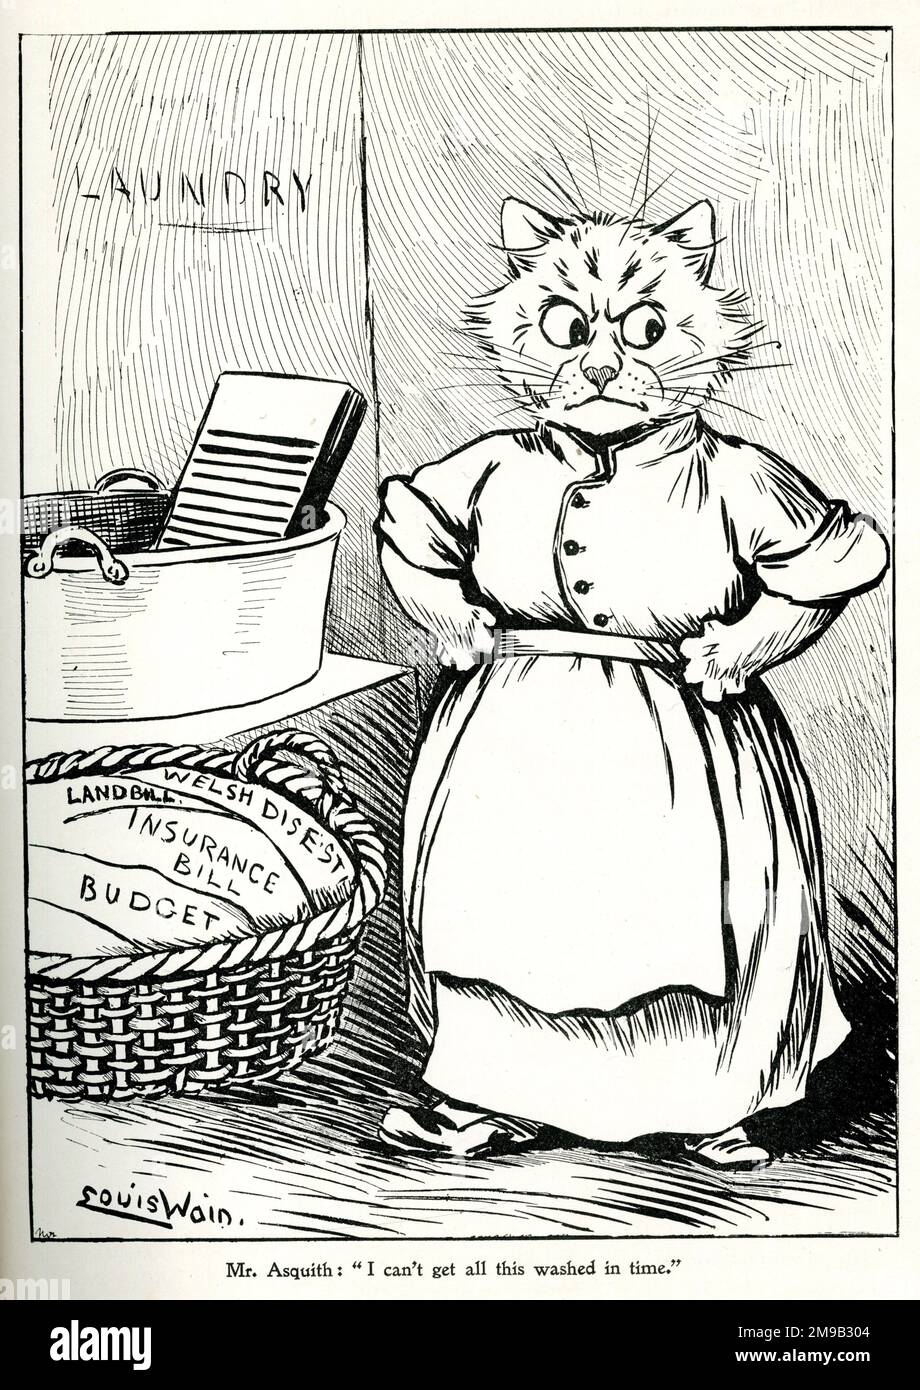 Politischer Zeichentrickfilm, liberaler Premierminister Asquith, ich kann das nicht rechtzeitig waschen lassen - Katzenwäscherin, die versucht, Parlamentsrechnungen in Form von Wäsche zu bearbeiten, von Louis Wain Stockfoto